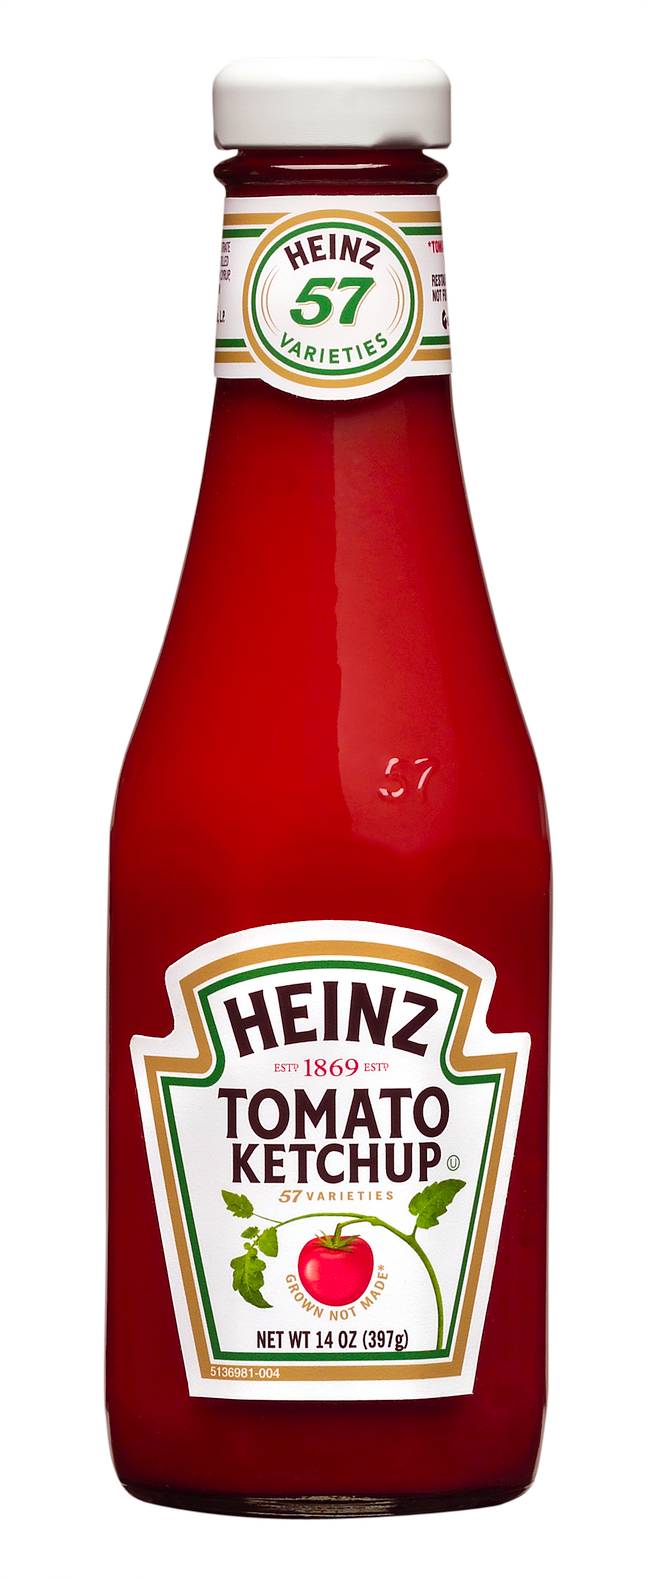 卡夫亨氏拥有亨氏番茄酱。资料来源:卡夫亨氏公司